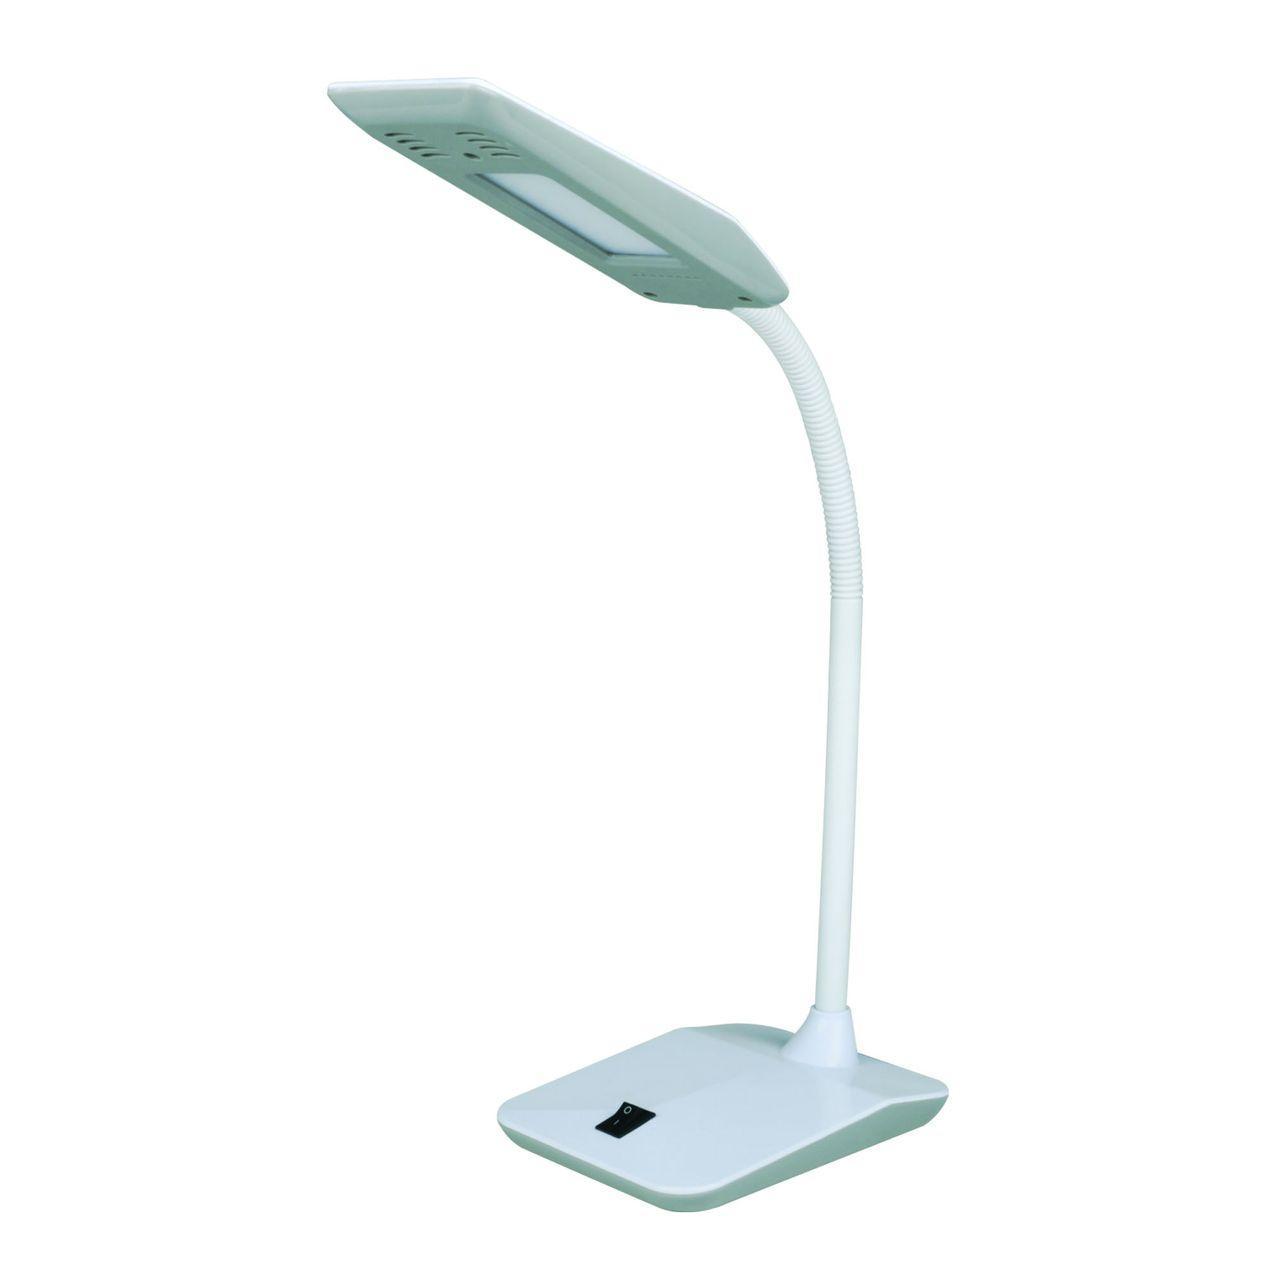 Настольная лампа Uniel TLD-545 Grey-White/LED/350Lm/3500K